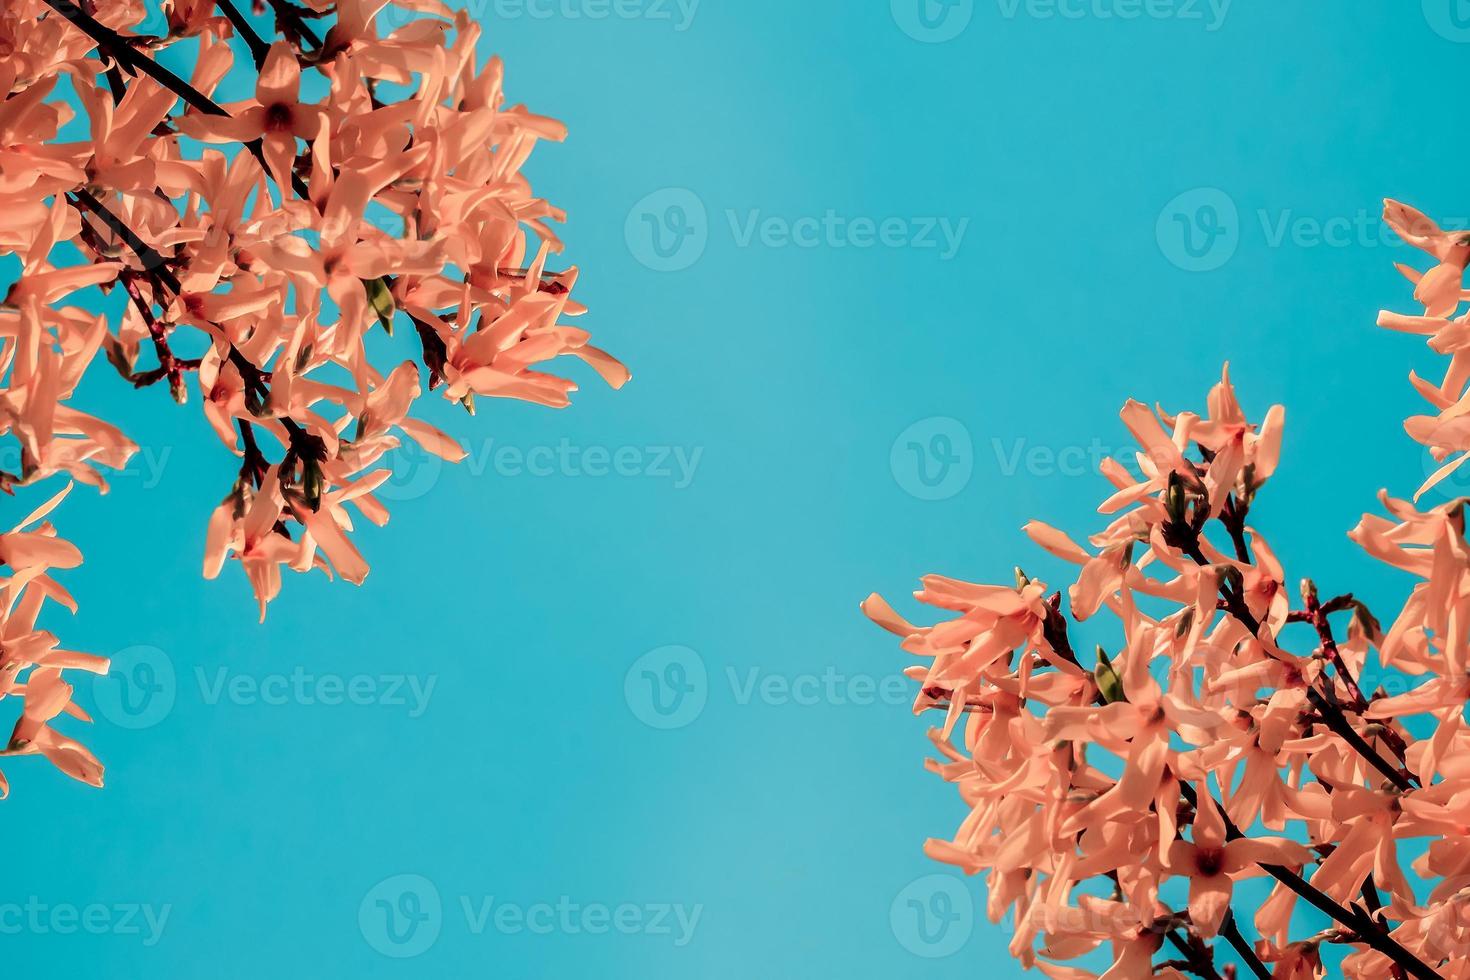 el florecimiento de la forsythia contra el cielo azul foto